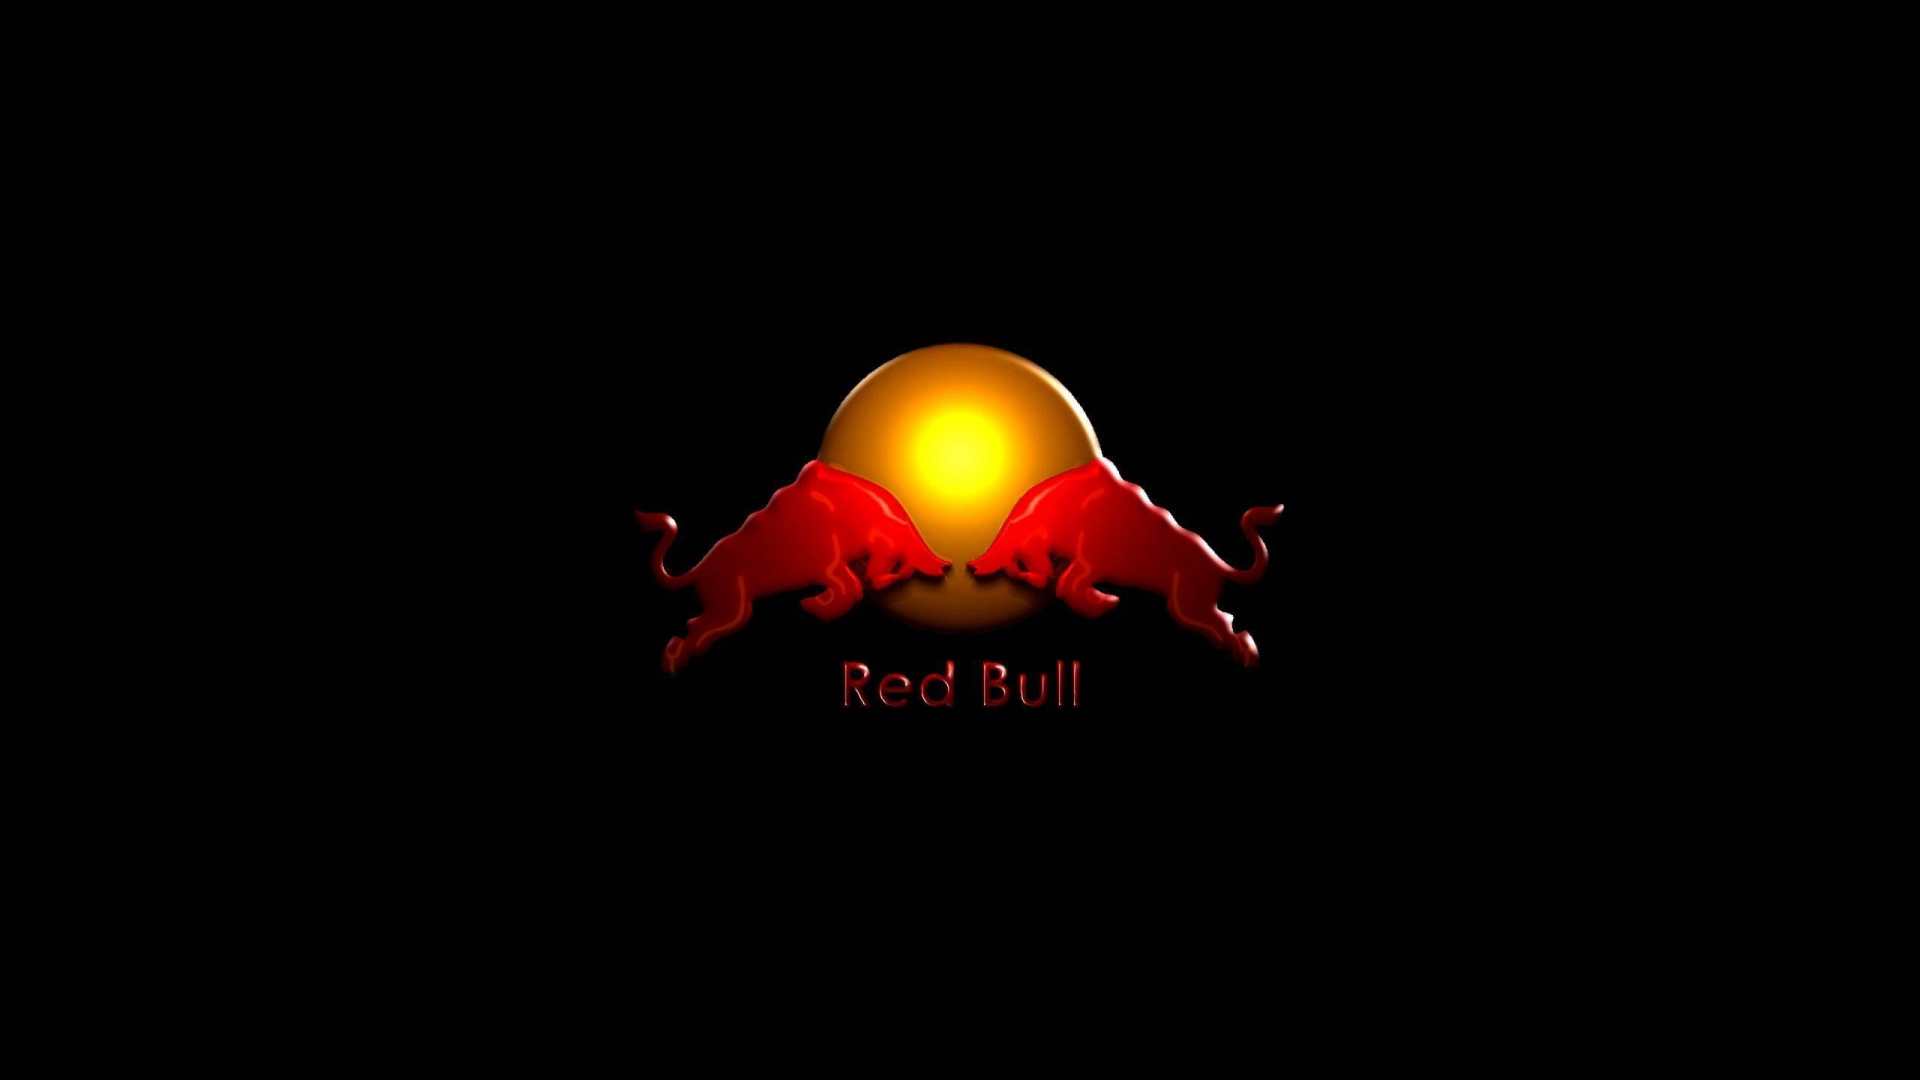 Red Bull for 1920 x 1080 HDTV 1080p resolution